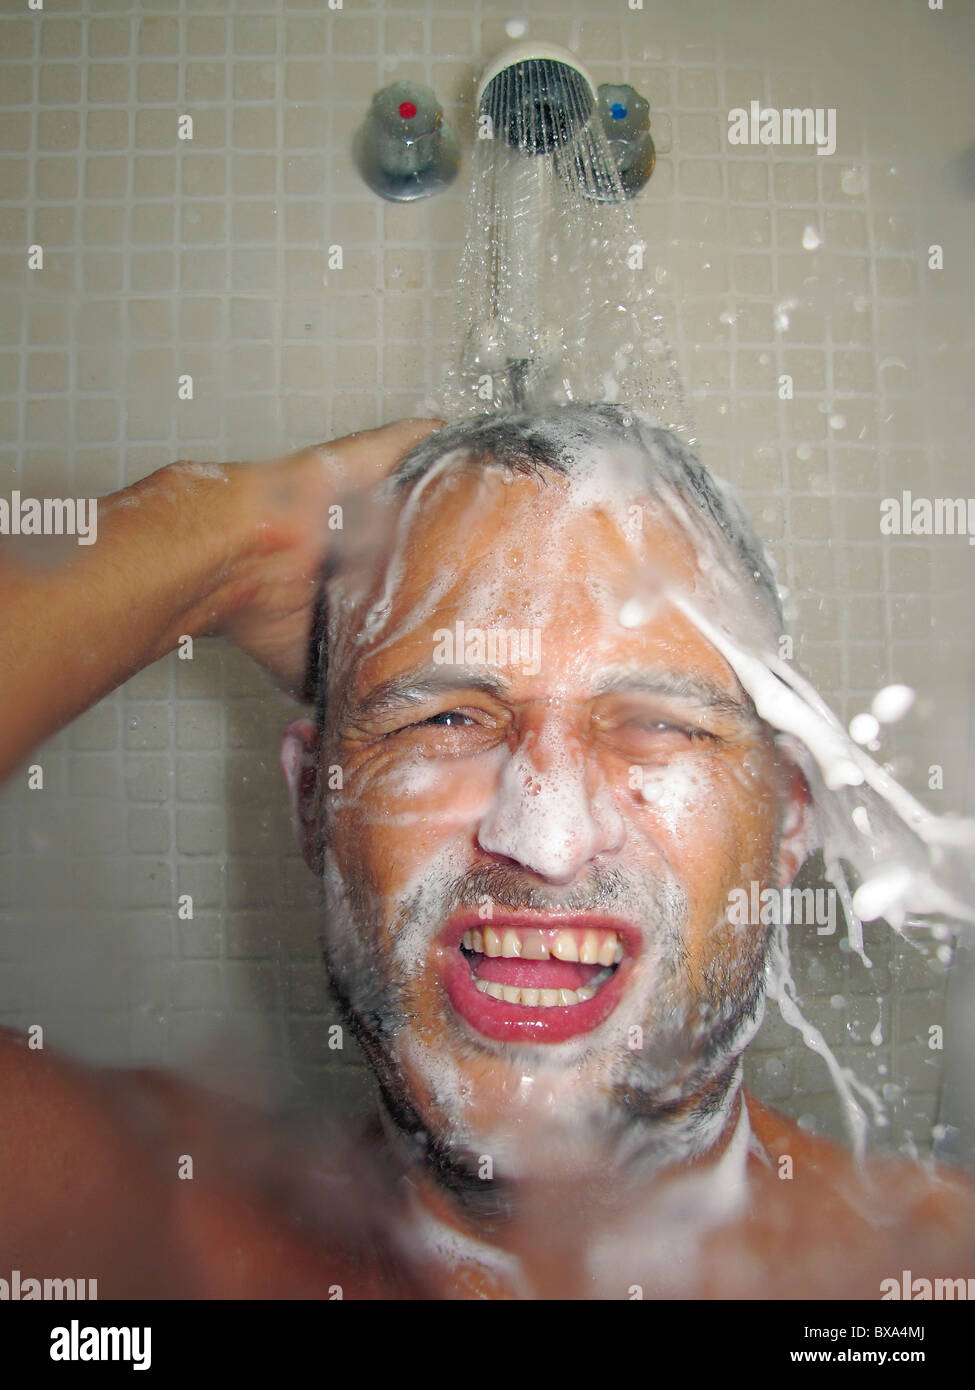 Mann unter der Dusche Stockfotografie - Alamy